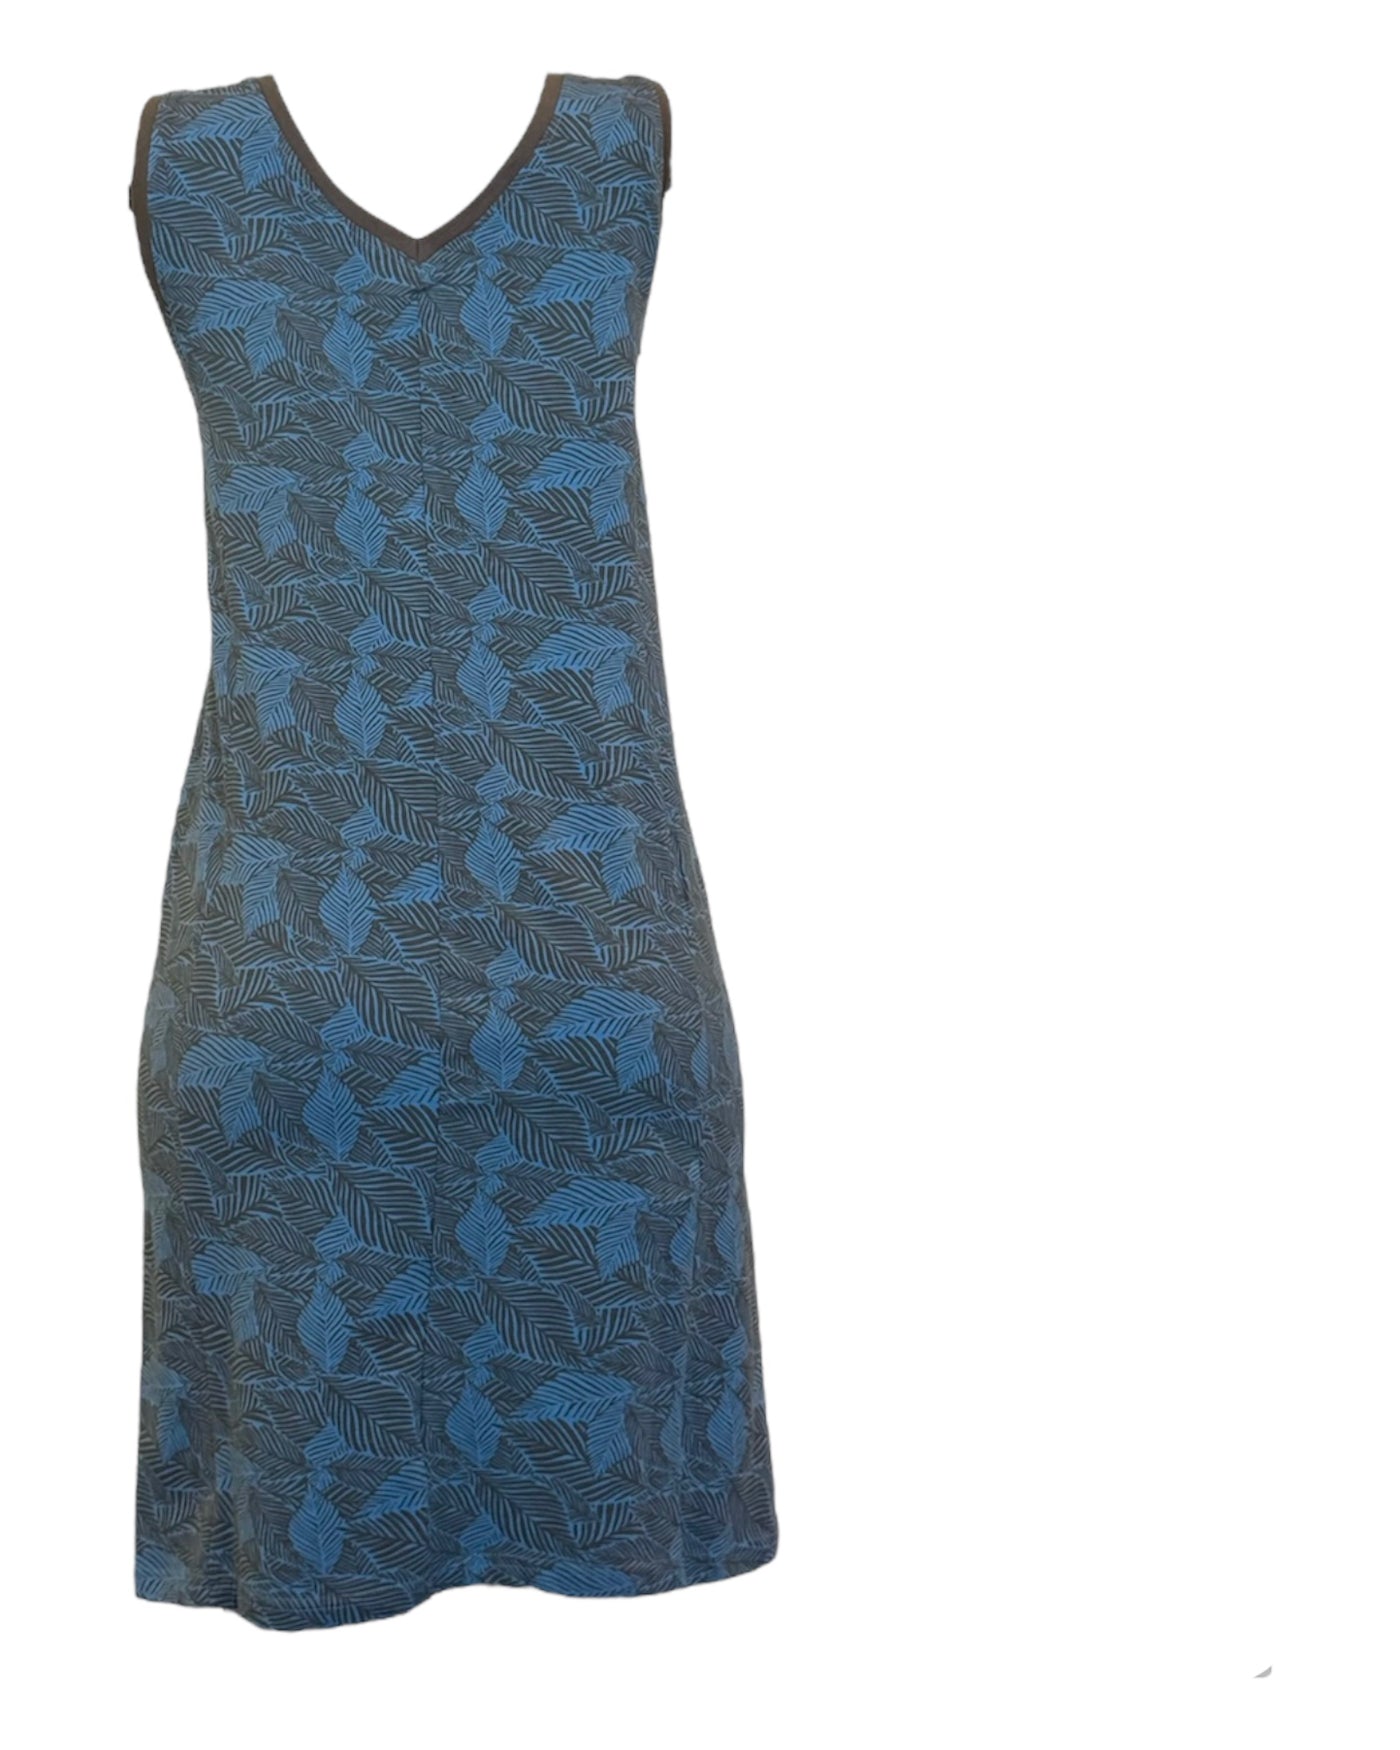 Jolie robe d'été col en v pour femme sans manche imprimé bleu et noir en coton organique